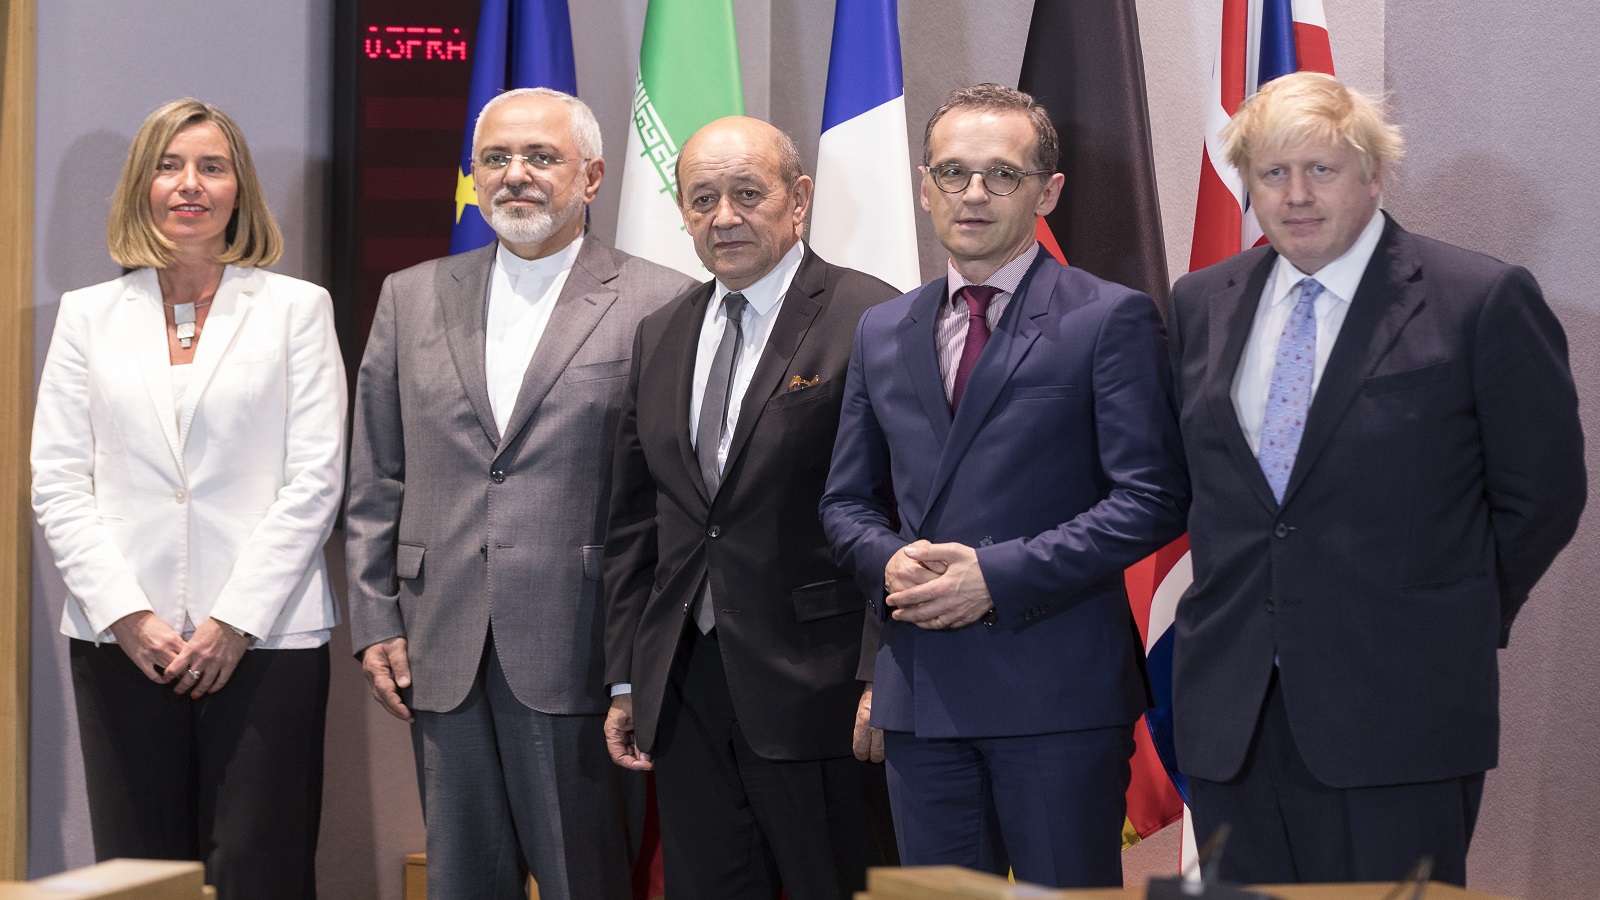 واشنطن: إيران تمارس "ابتزازاً نووياً" يستدعي ضغوطاً دولية